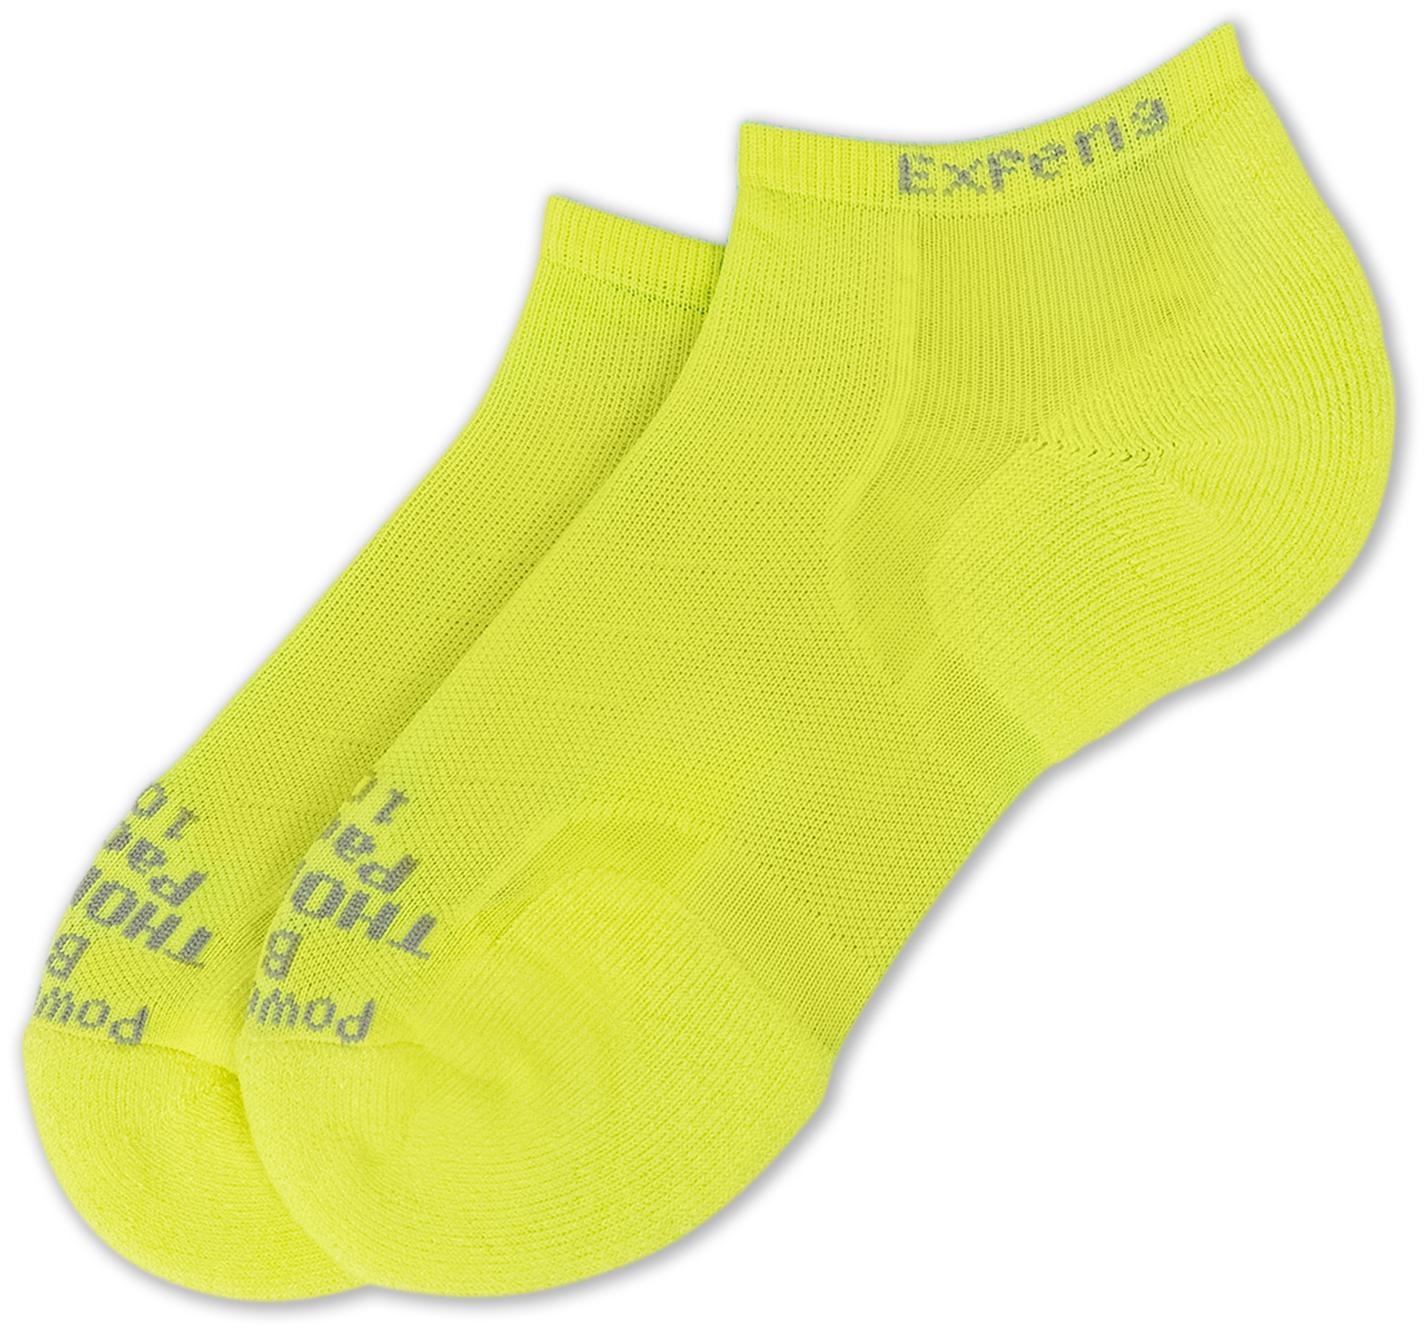 Носки женские Thorlo's Fitness Light Cushion Low Cut желтые 42